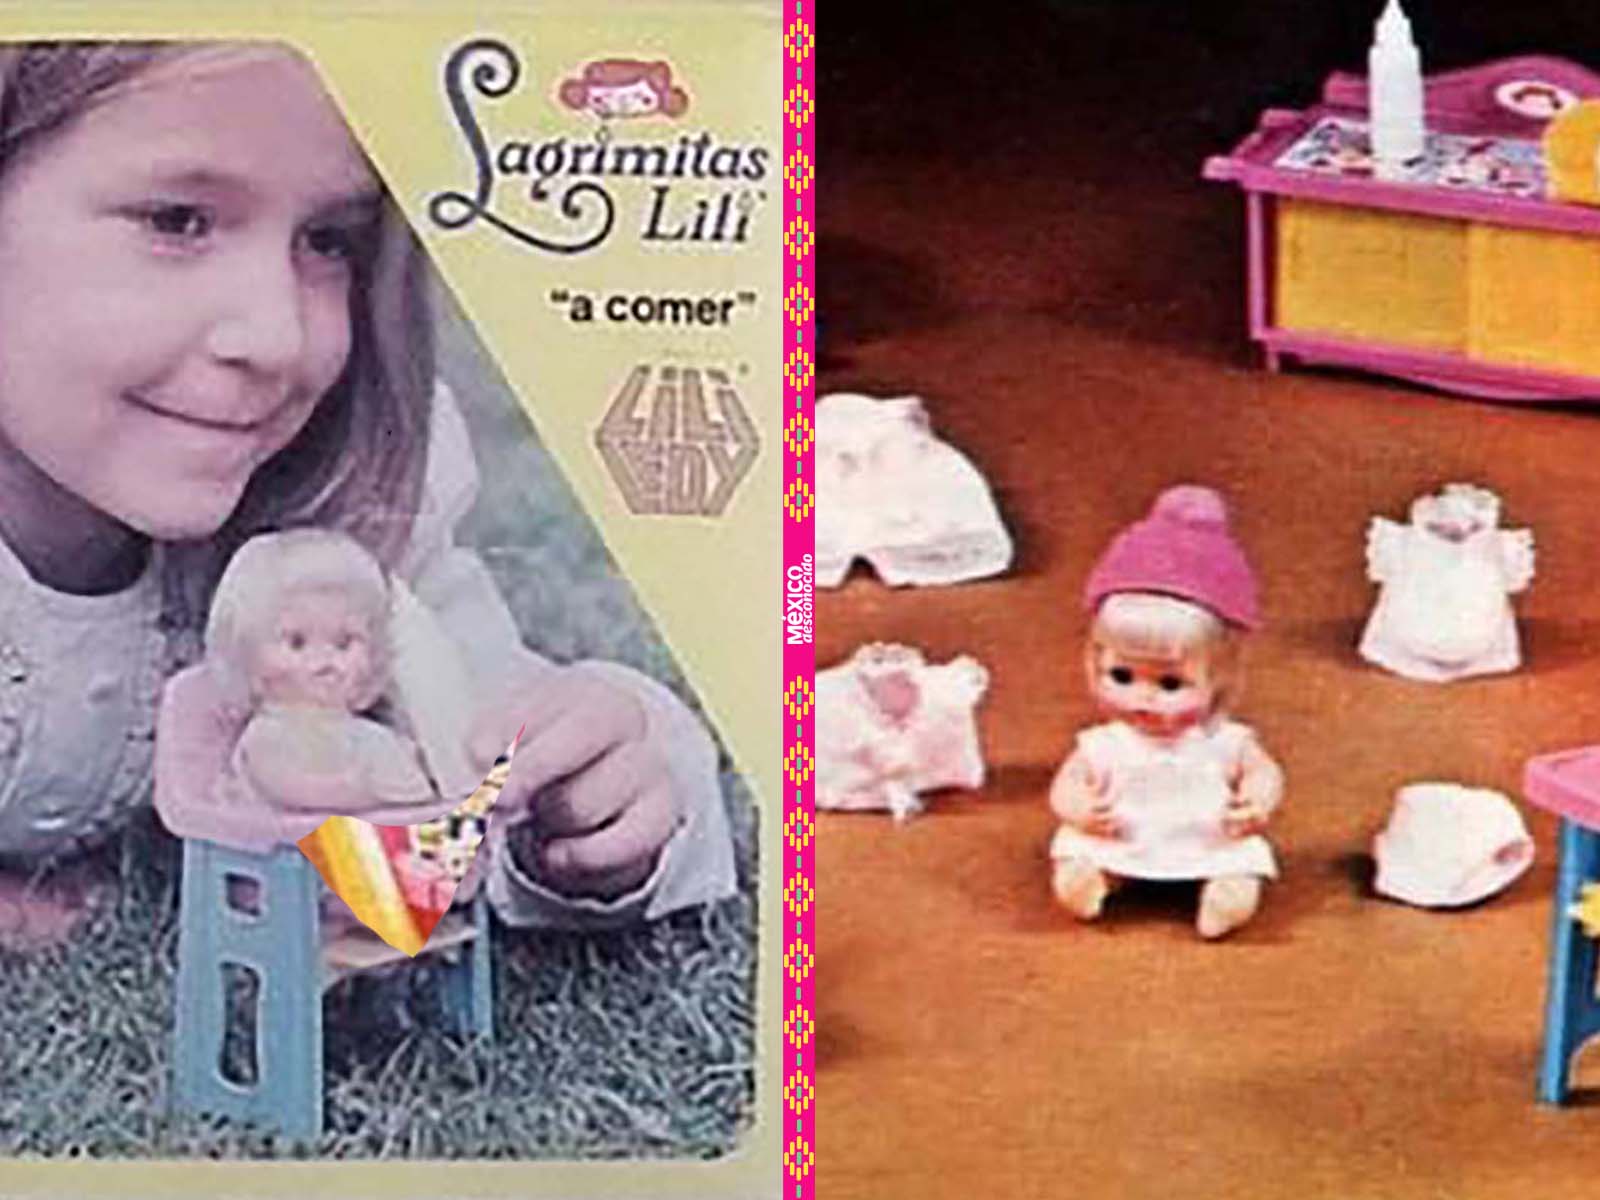 Lagrimitas Lilí, de muñecas más queridas las niñas mexicanas - México Desconocido